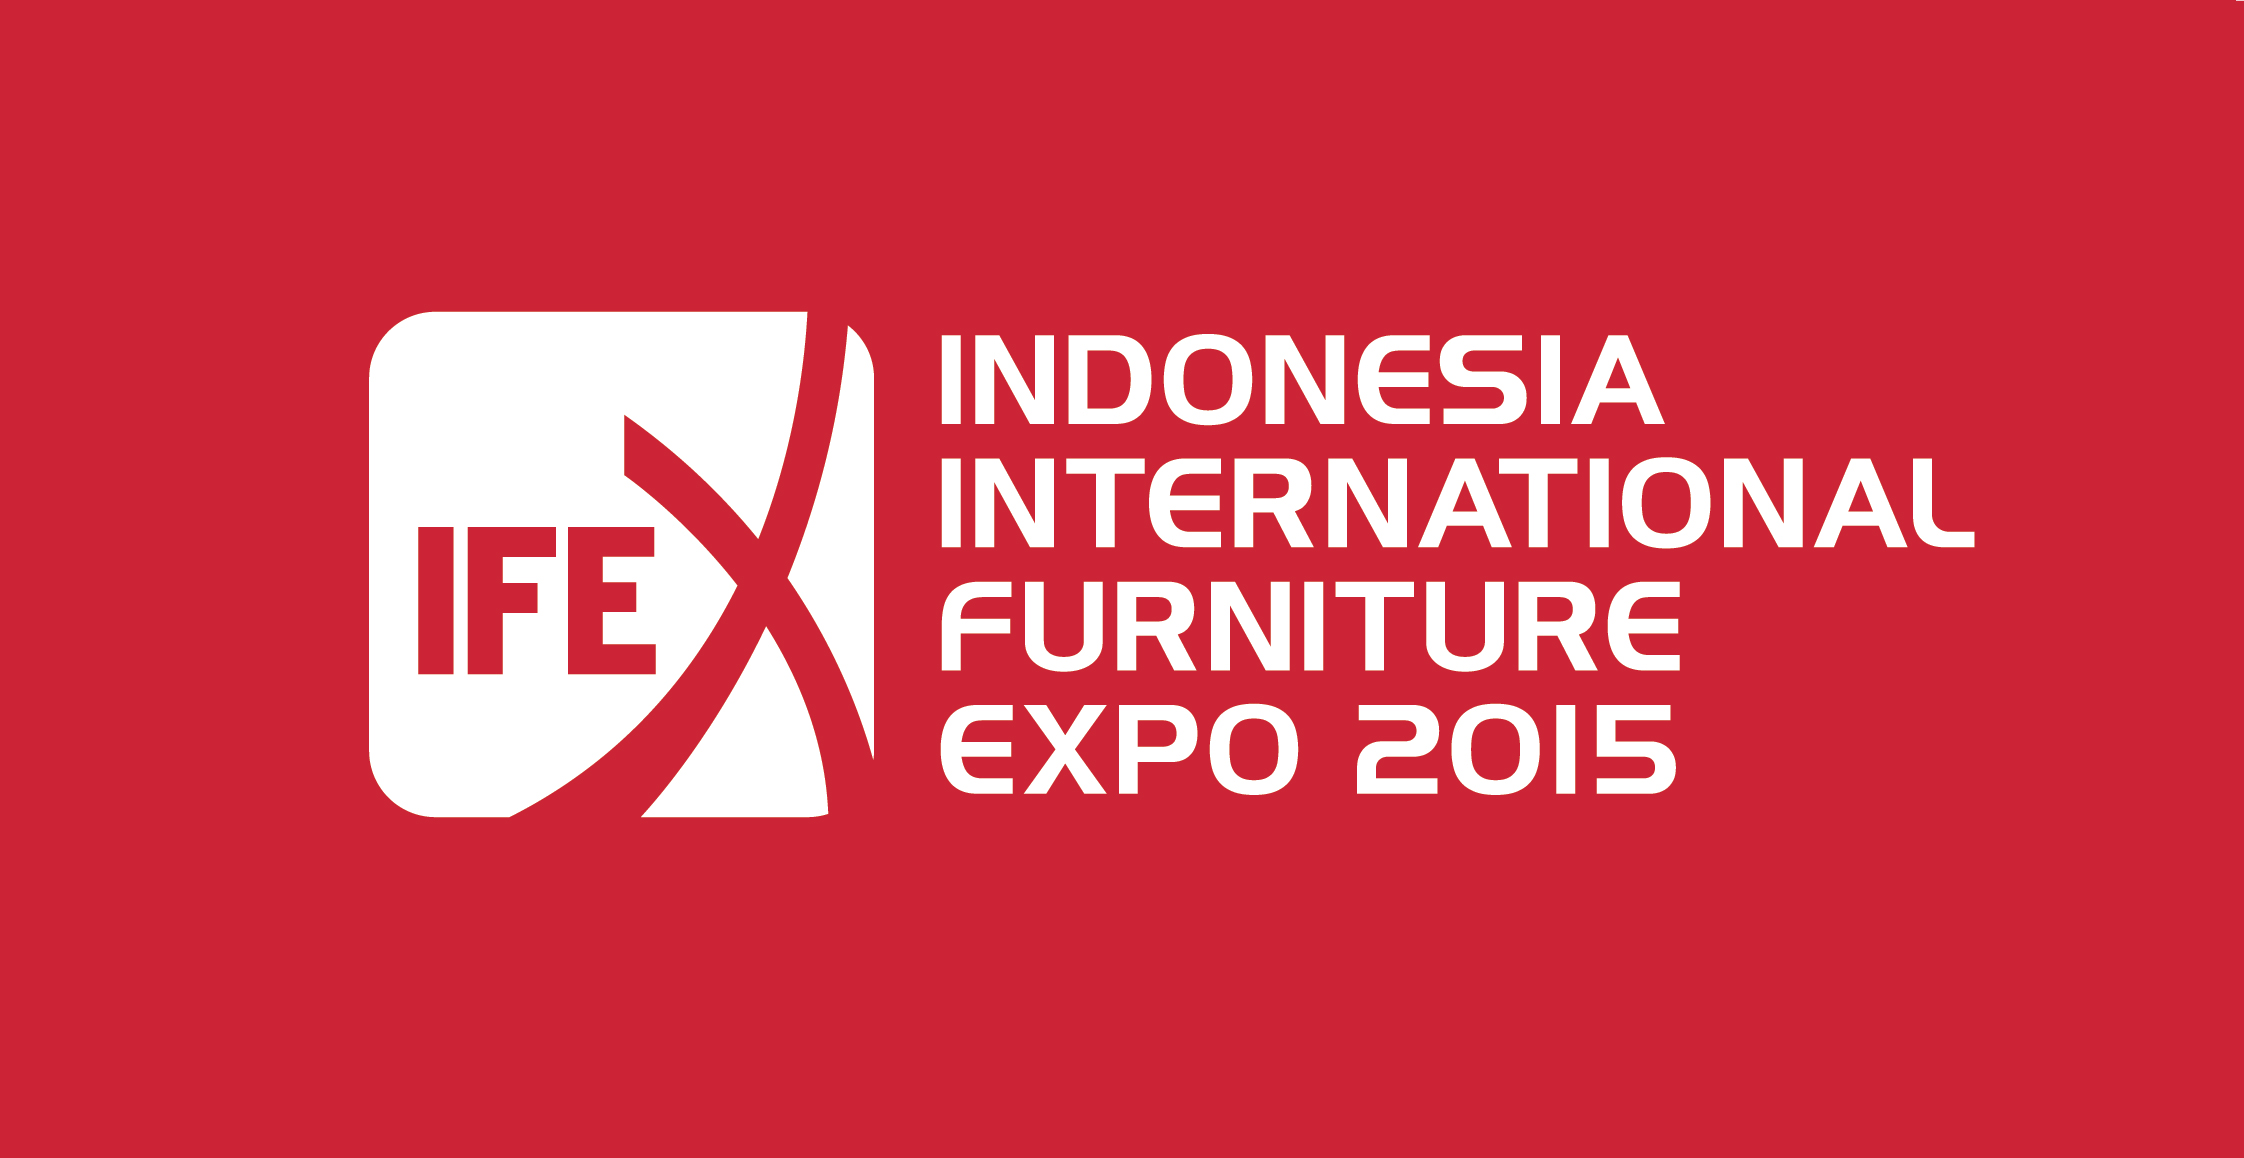 Indonesia Furniture Expo (IFEX) 2015